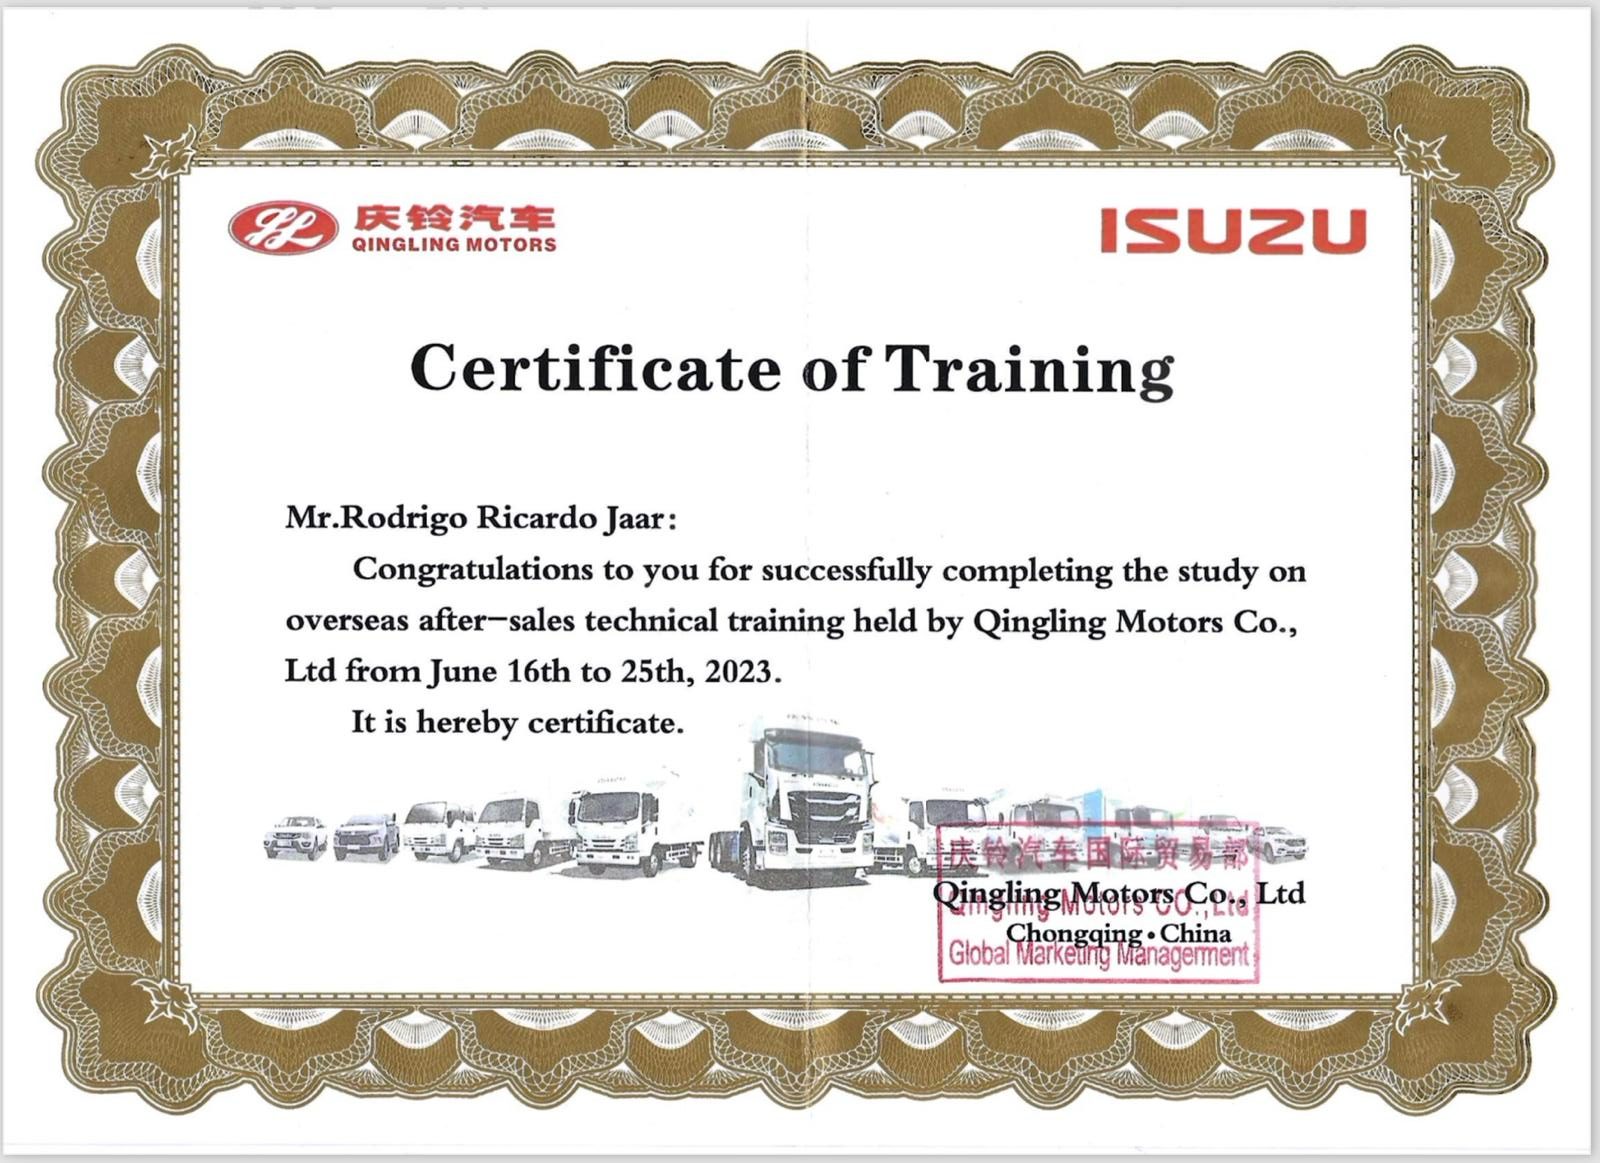 Certificado de entrenamiento de Qingling Motors.